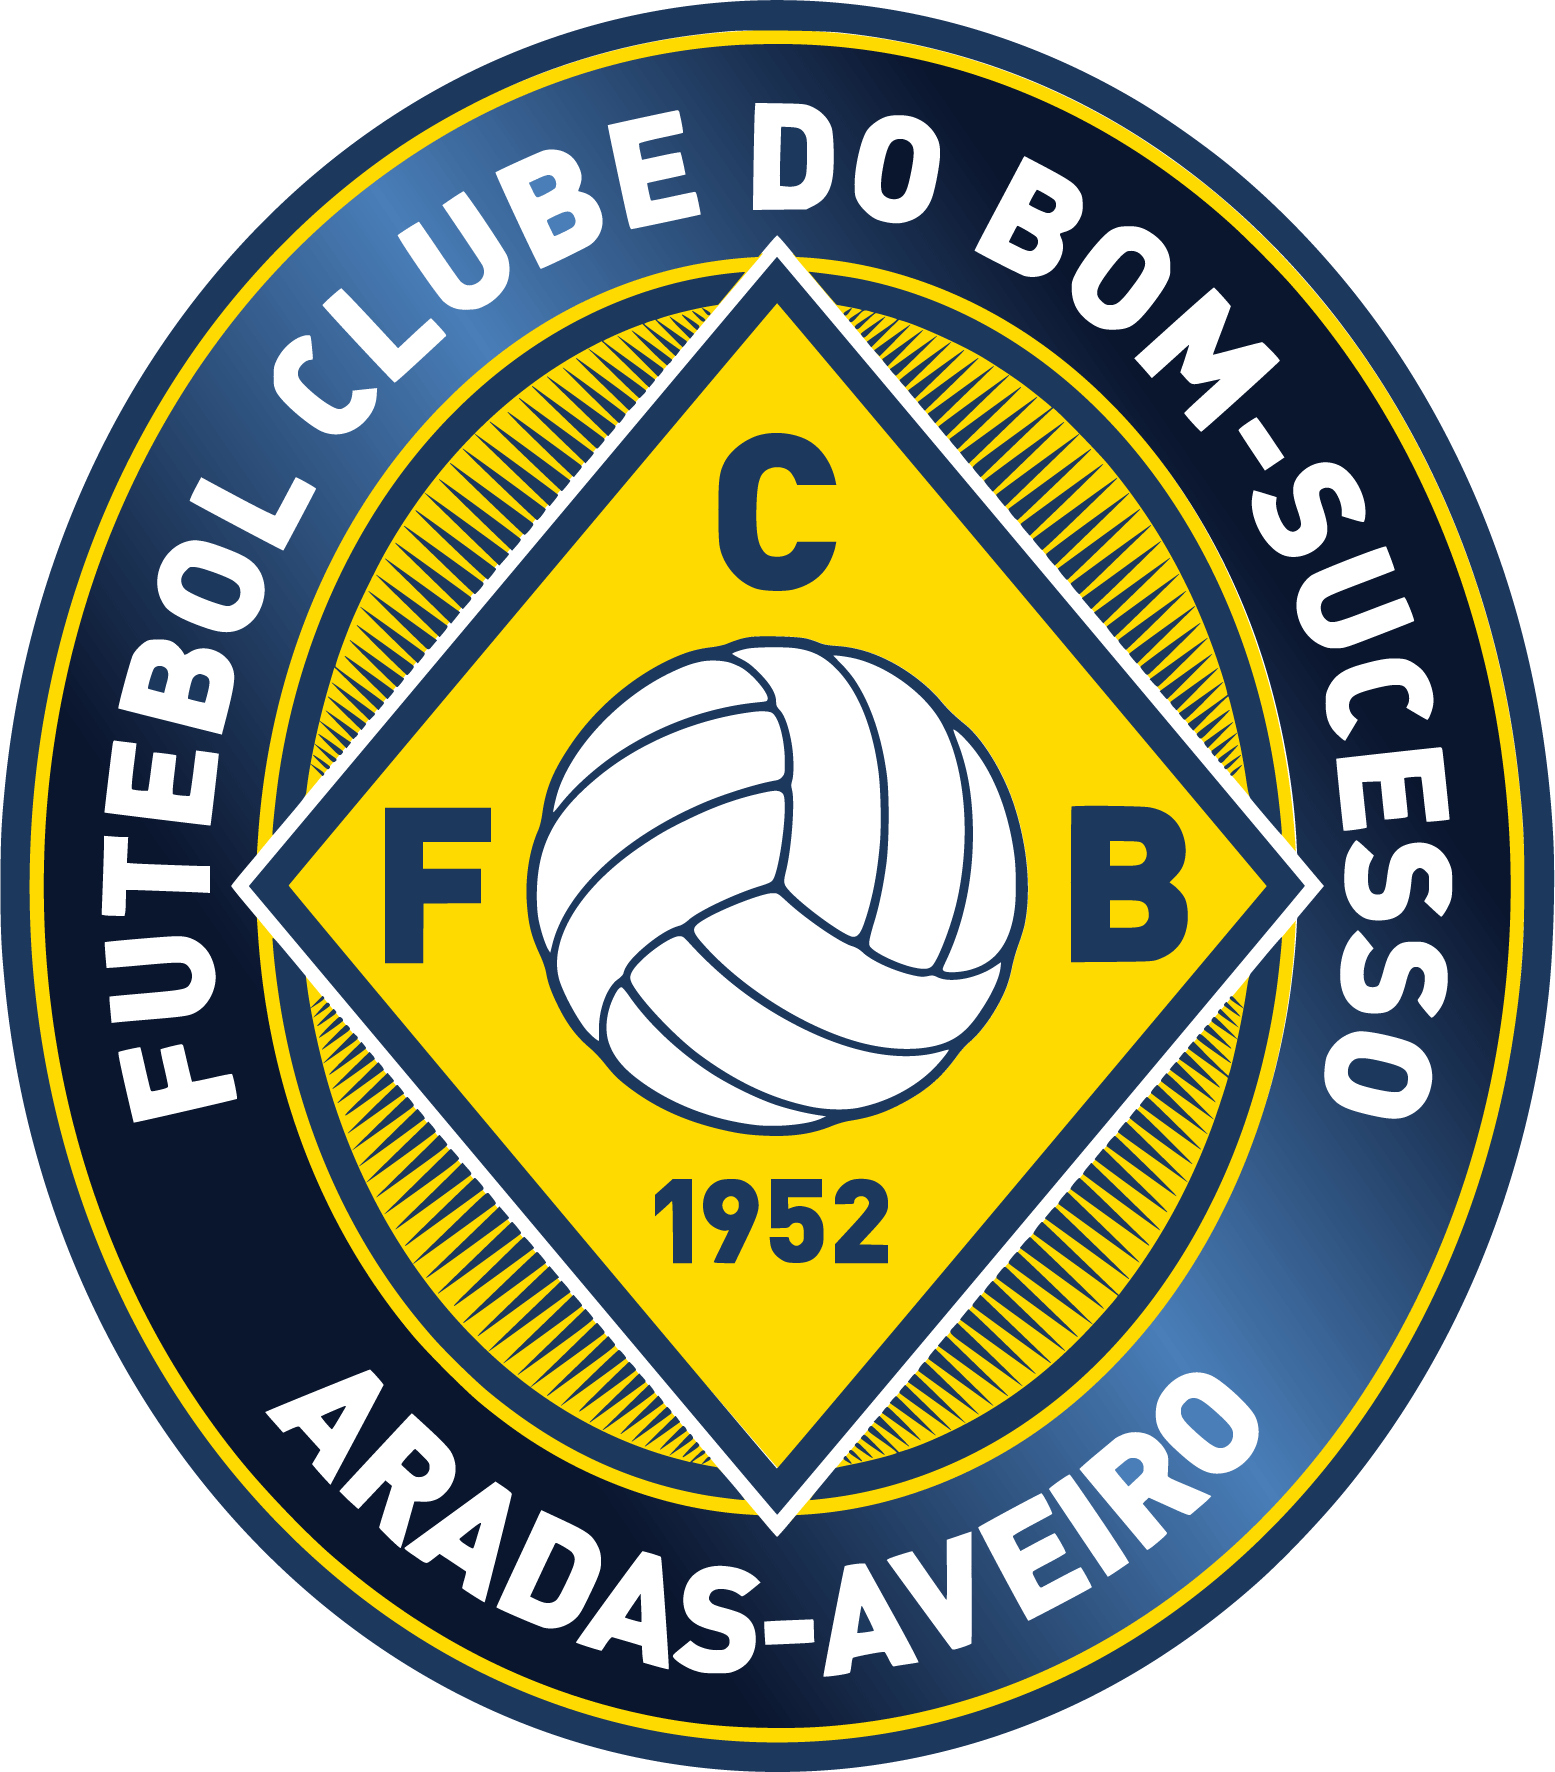 FC Bom-Sucesso